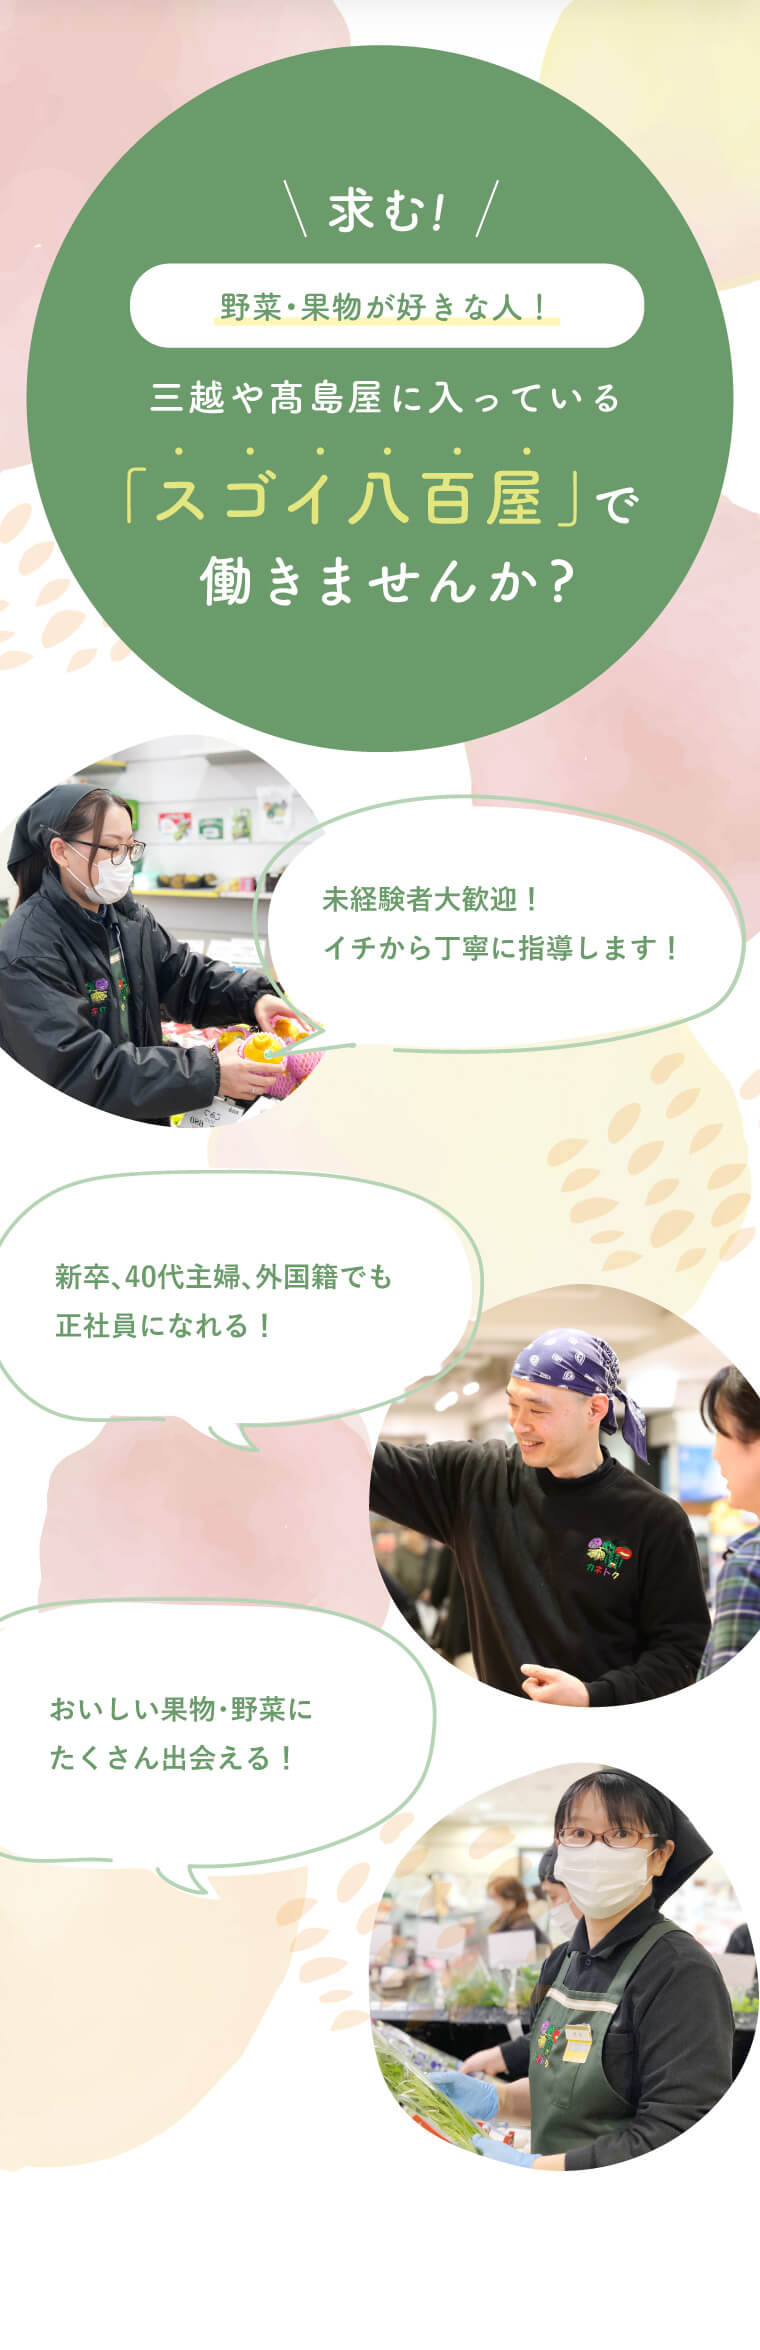 急募 イオンモール岡崎店のオープニングスタッフ名古屋で評判の「スゴイ八百屋」で働きませんか?